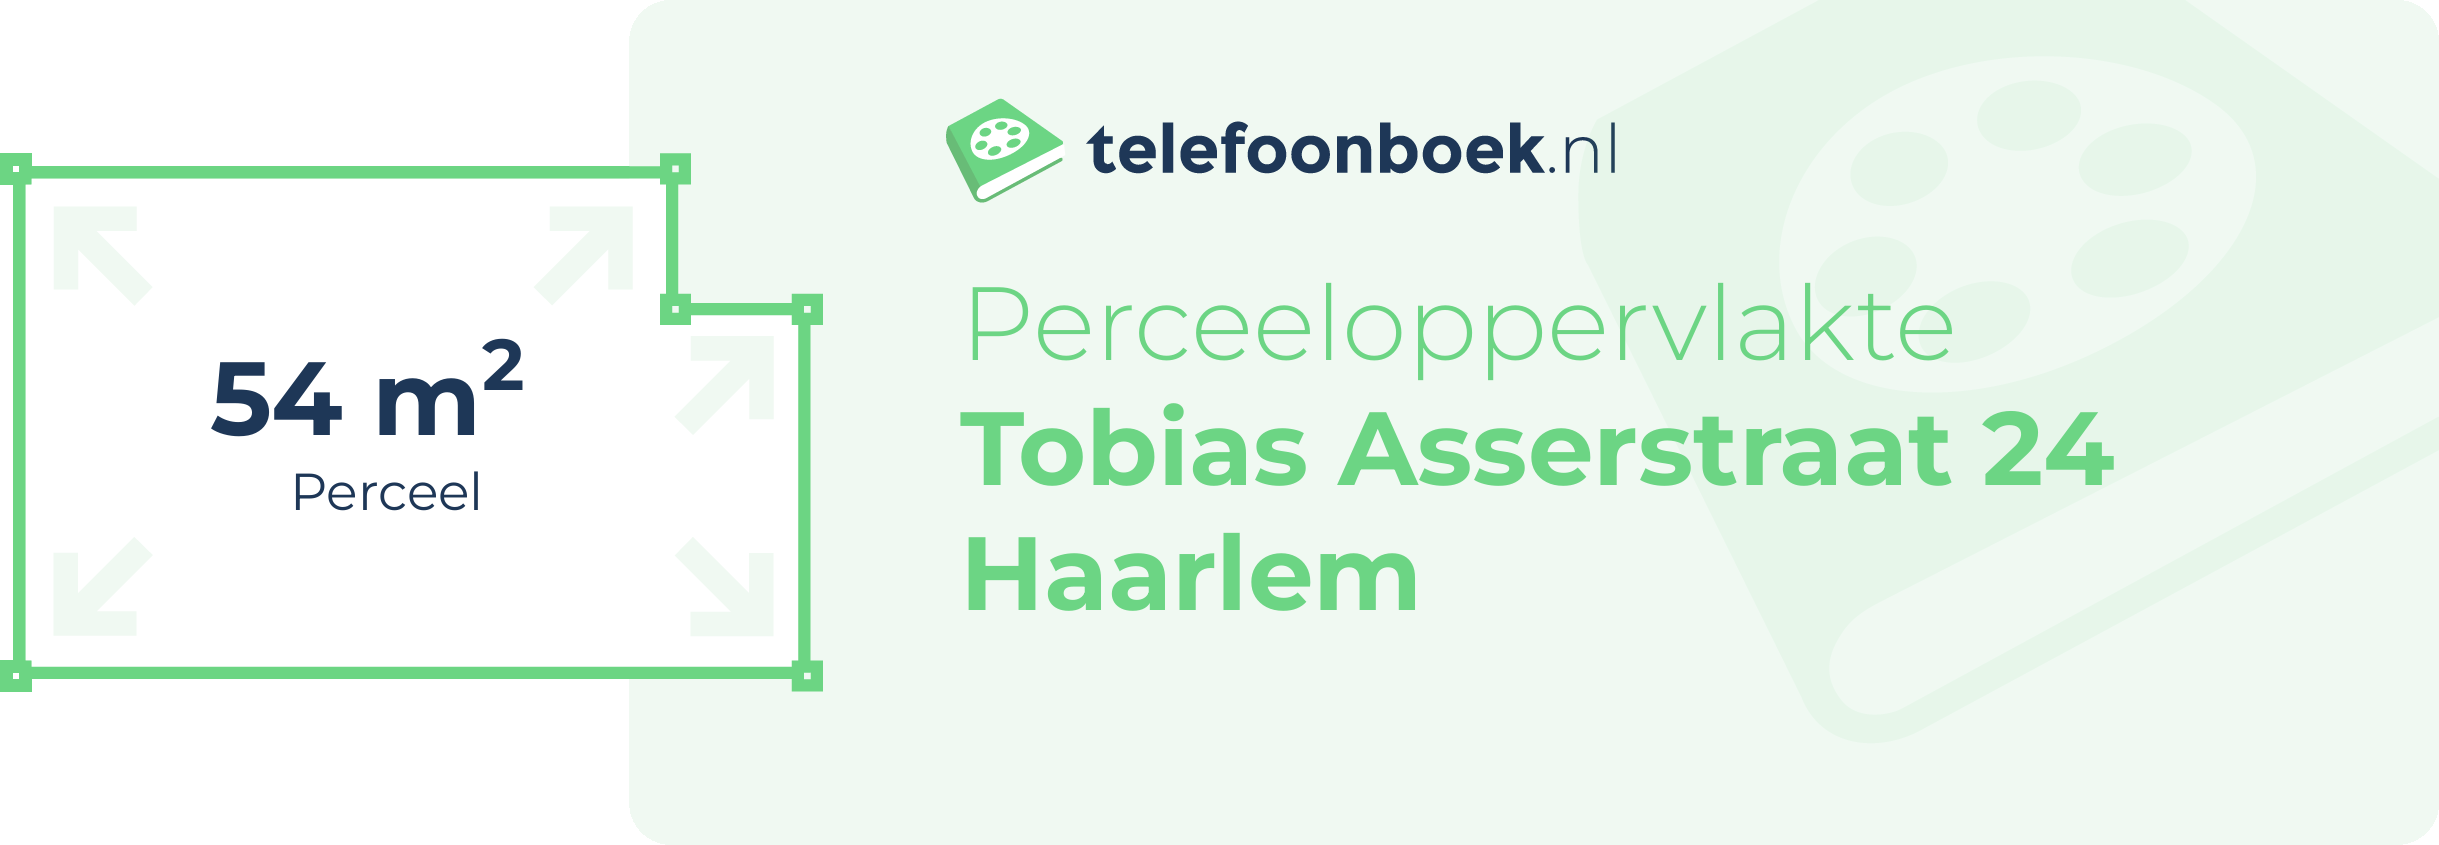 Perceeloppervlakte Tobias Asserstraat 24 Haarlem